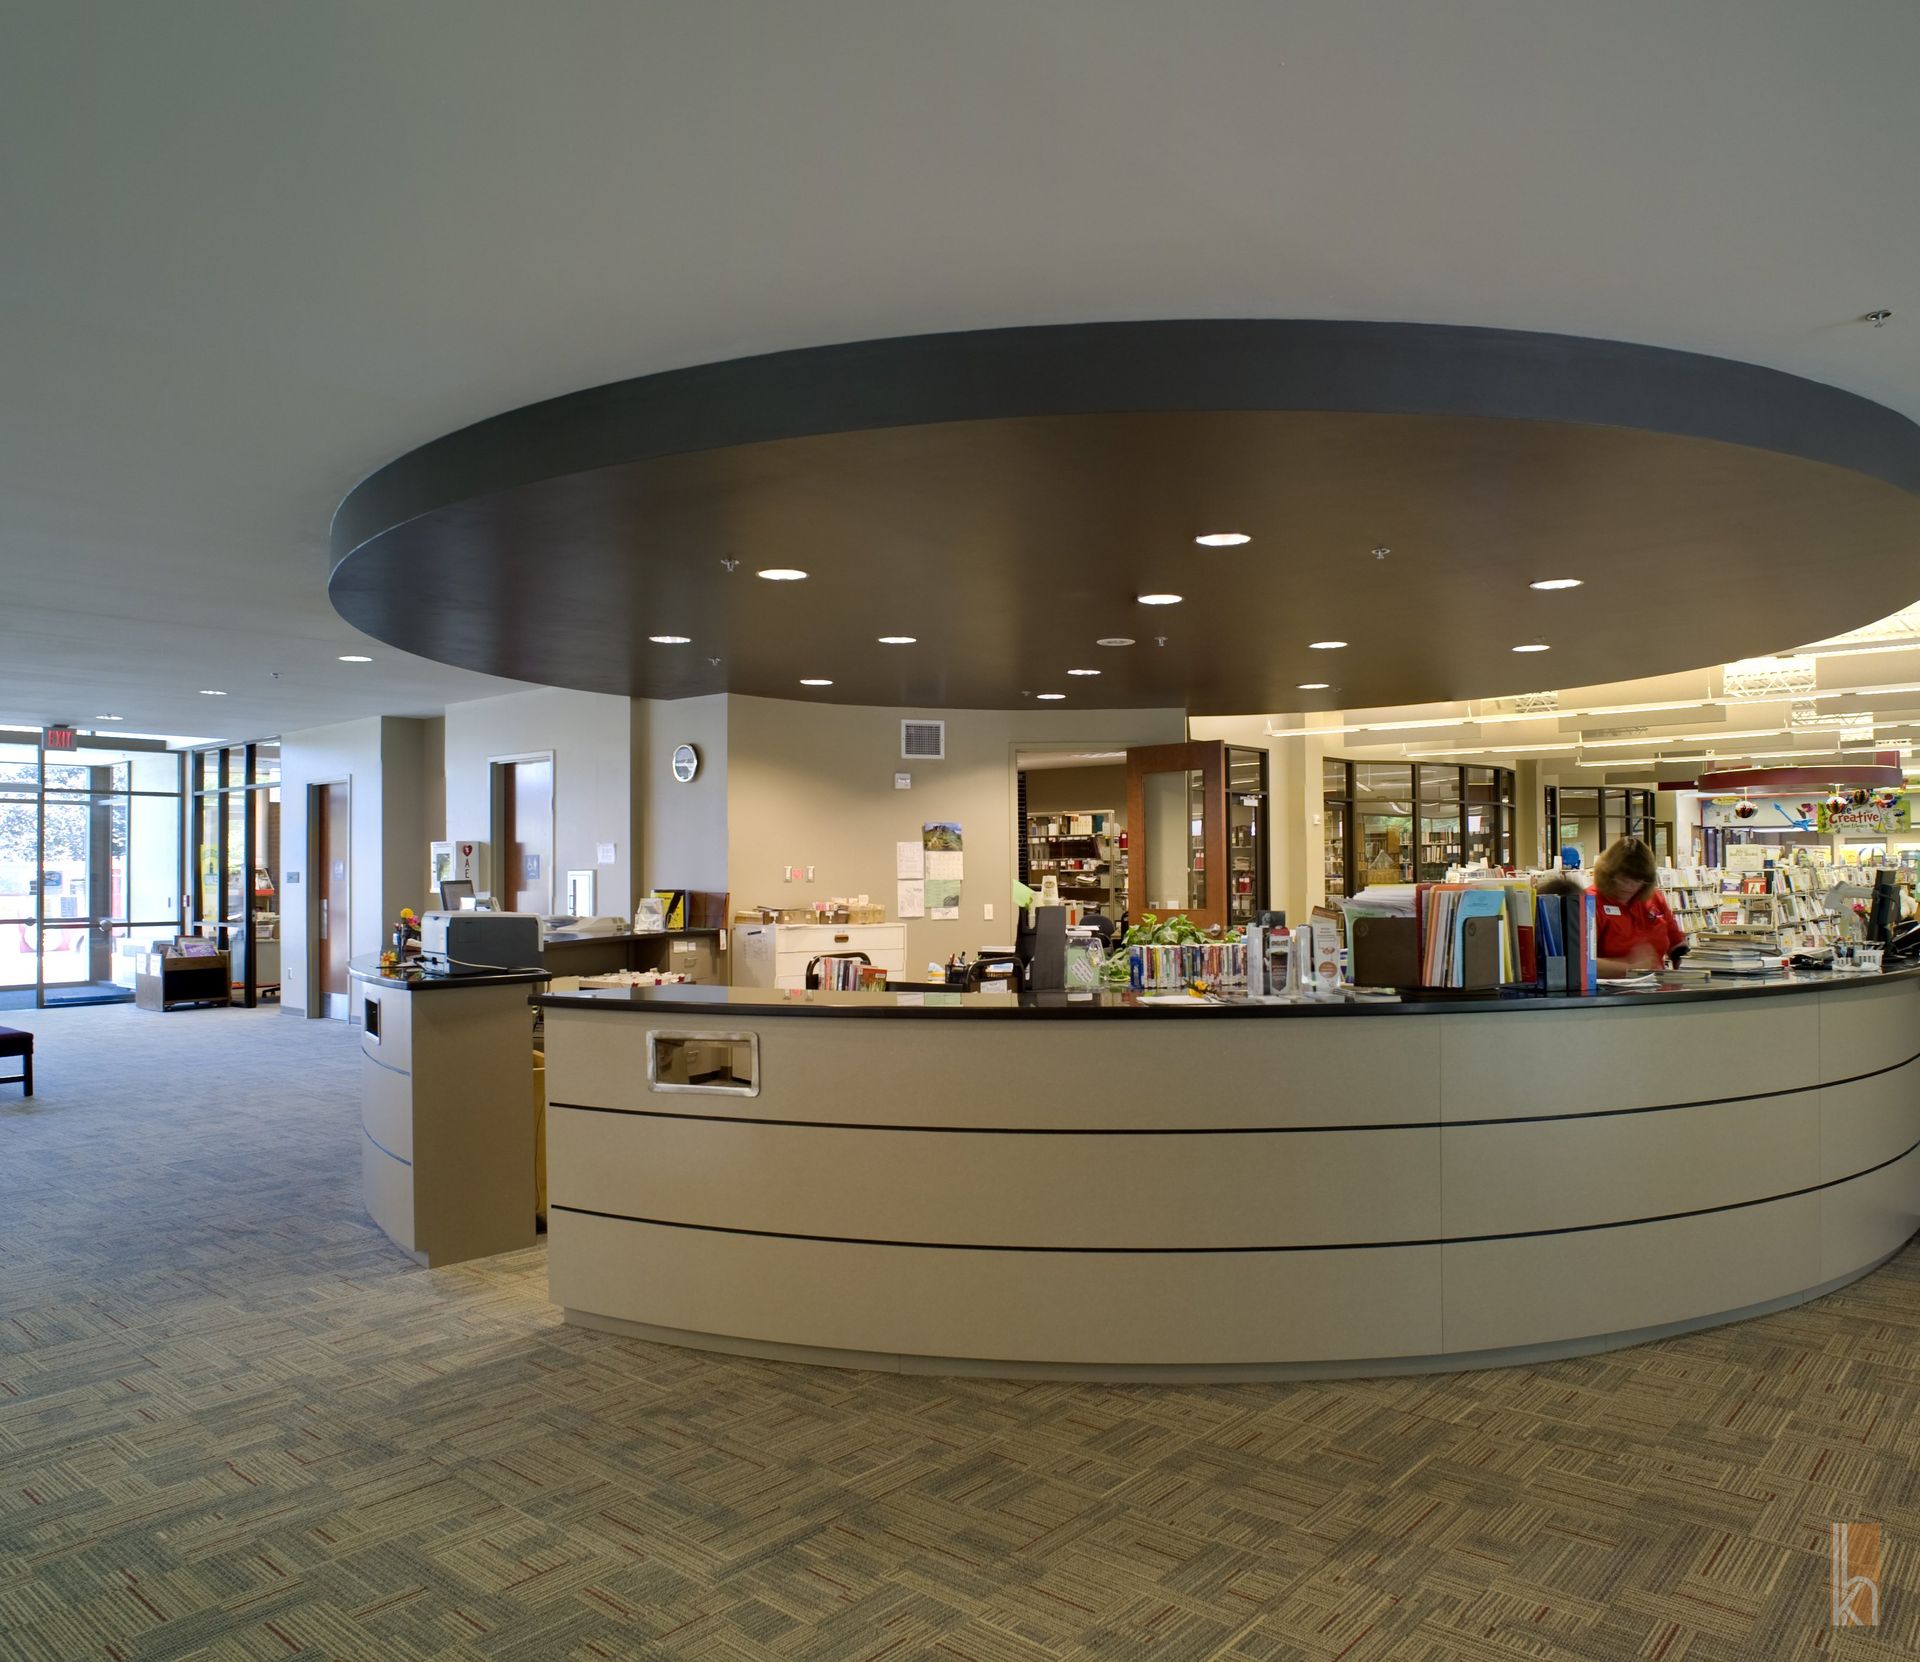 The public library's interior in Huron, South Dakota